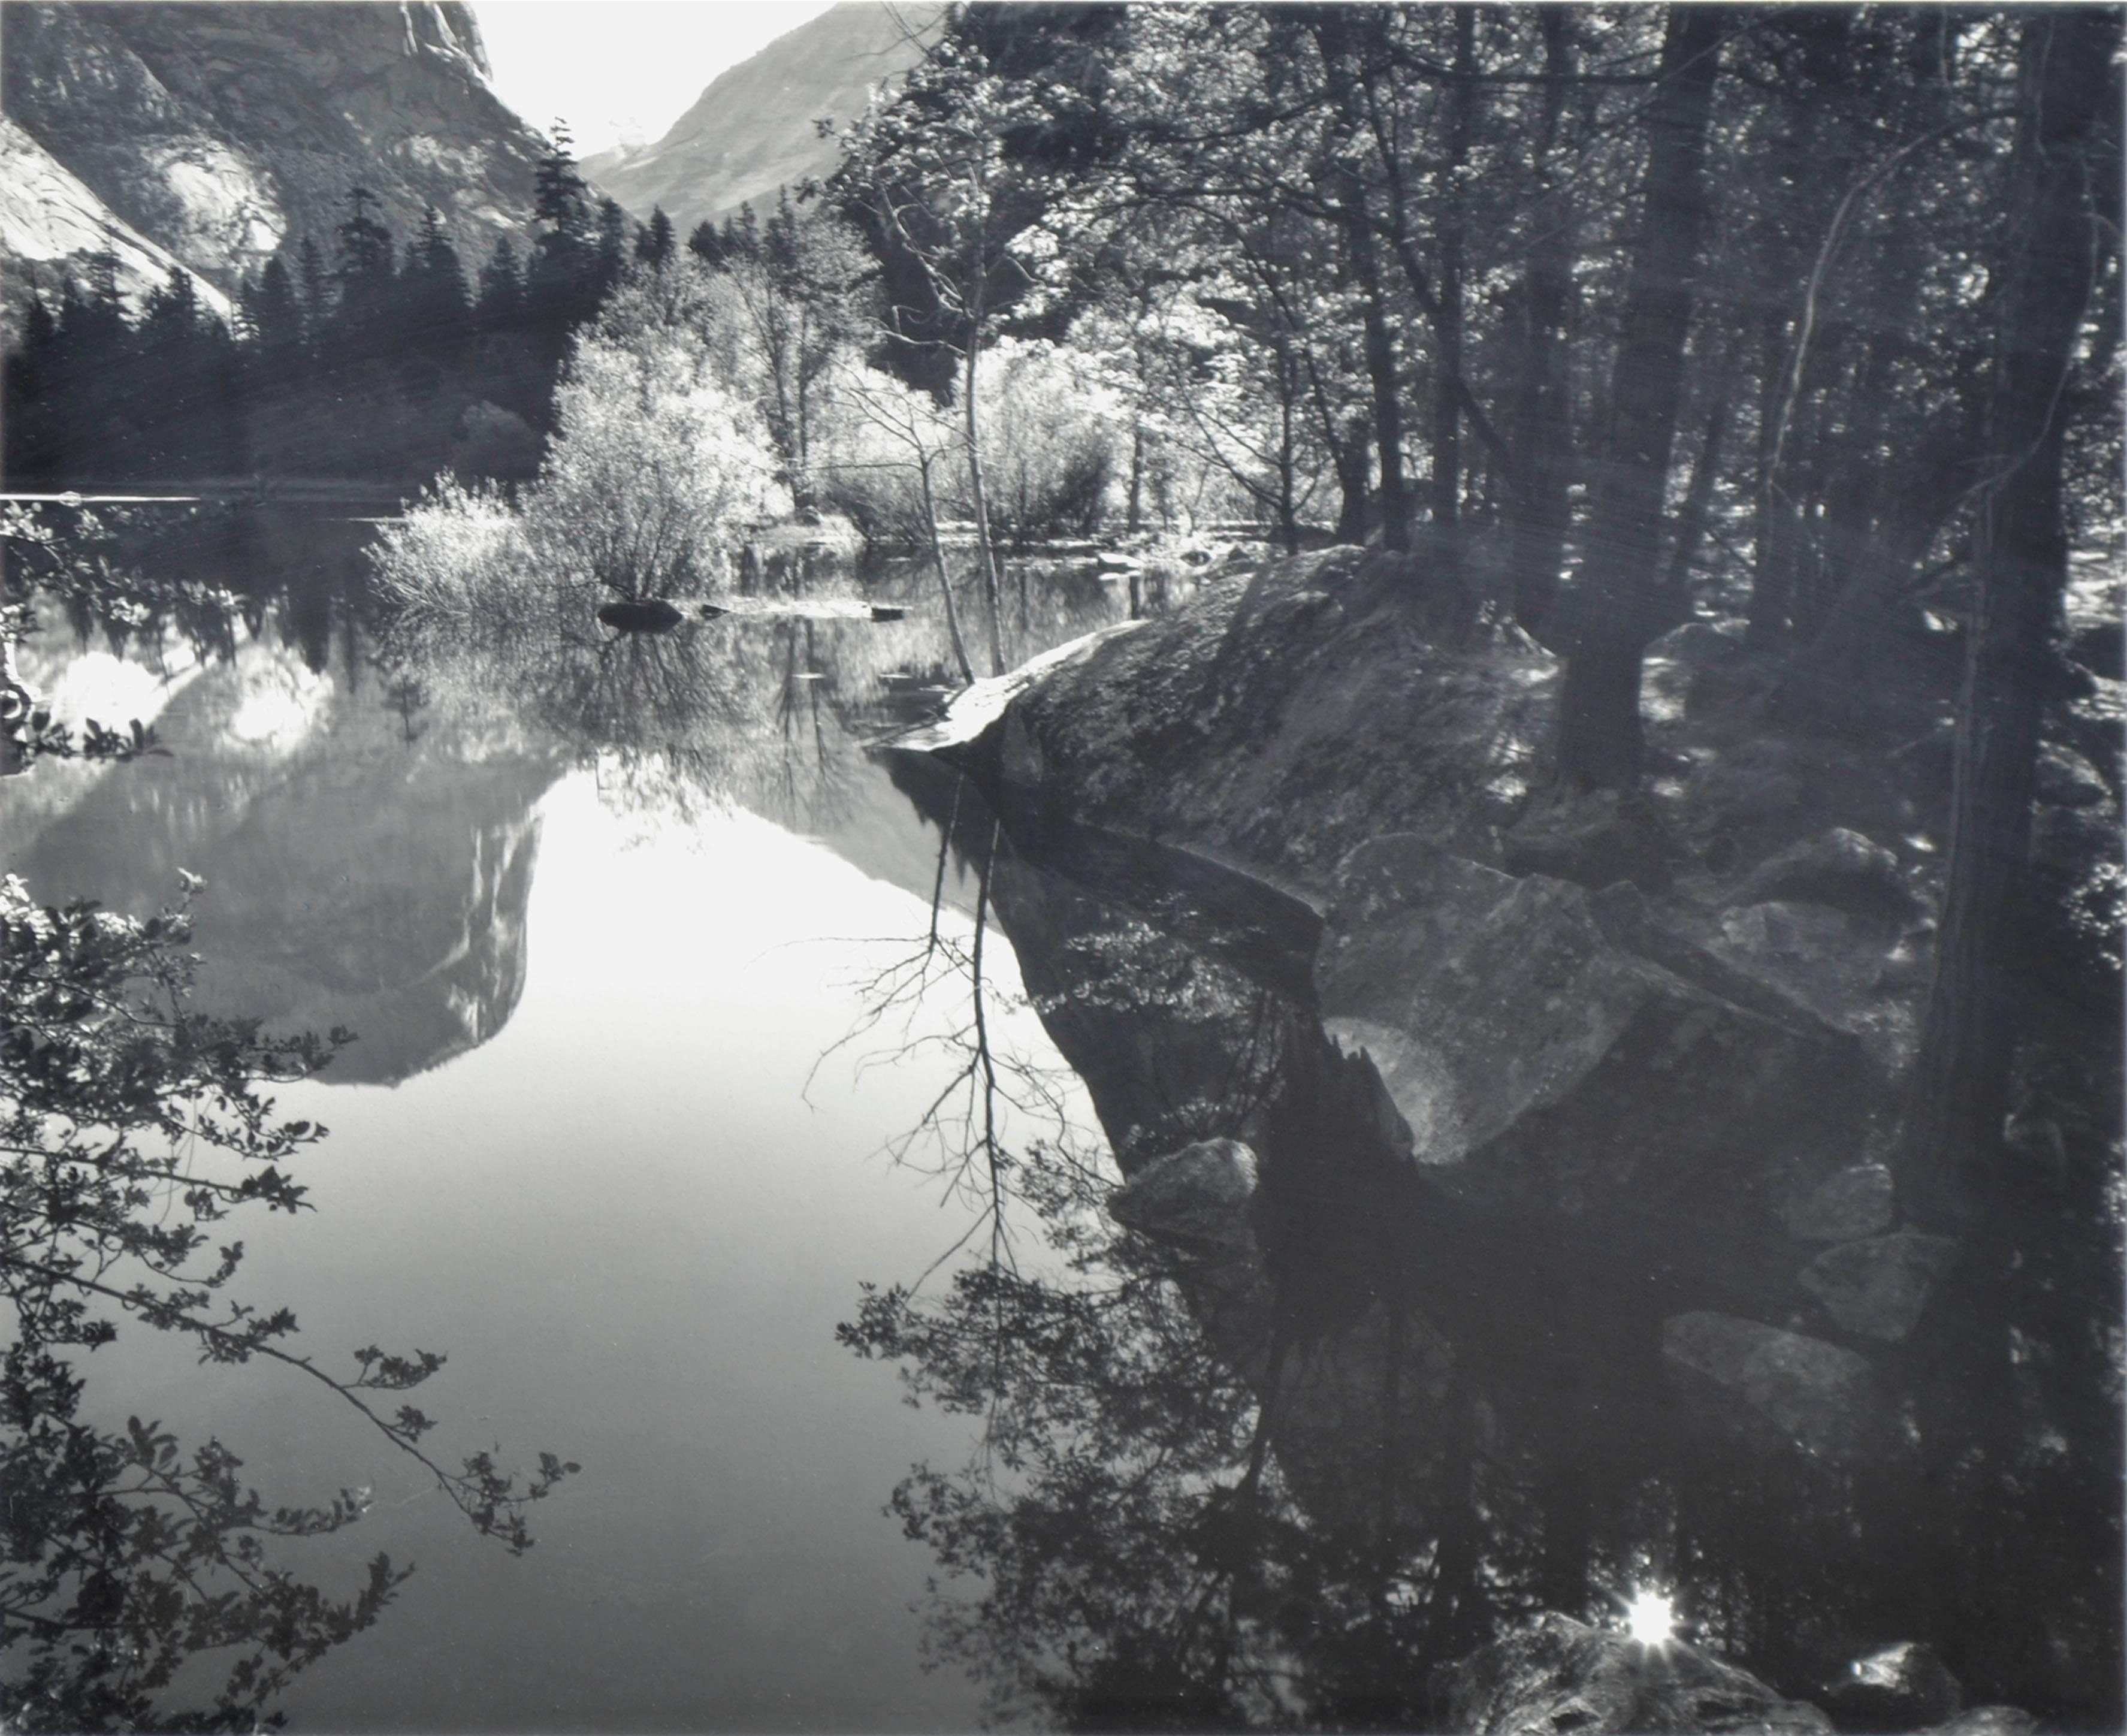 Reflektionen des Sierra Mountain Reflections – Schwarz-Weiß-Landschaftsfotografie – Photograph von Robert Werling